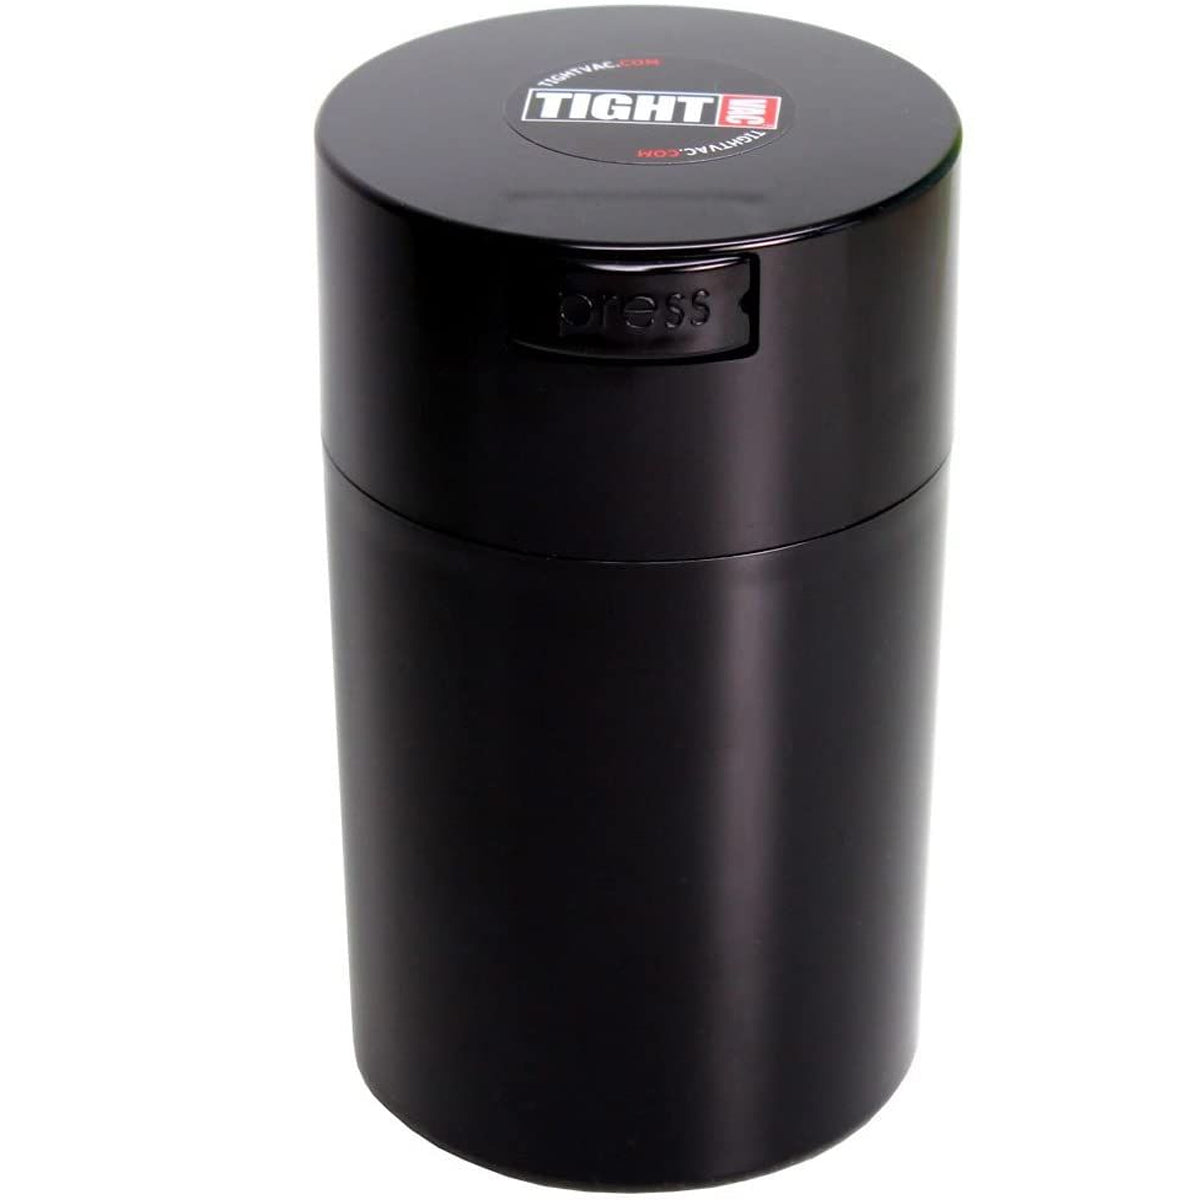 Tightvac vacuum container 2.35l